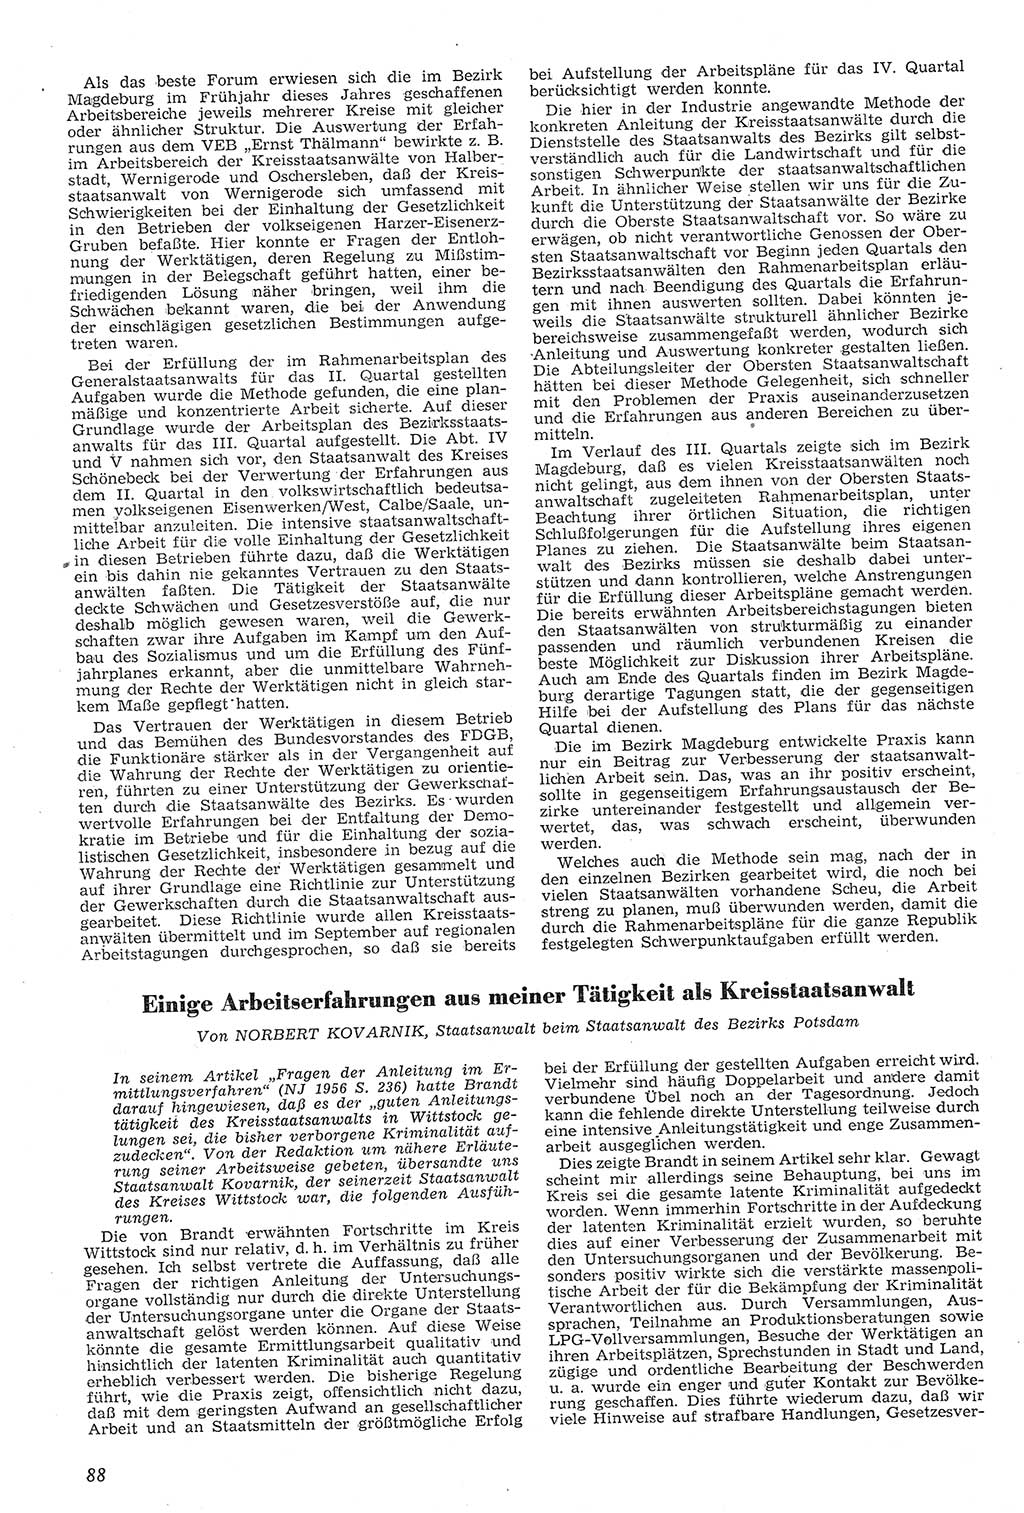 Neue Justiz (NJ), Zeitschrift für Recht und Rechtswissenschaft [Deutsche Demokratische Republik (DDR)], 11. Jahrgang 1957, Seite 88 (NJ DDR 1957, S. 88)